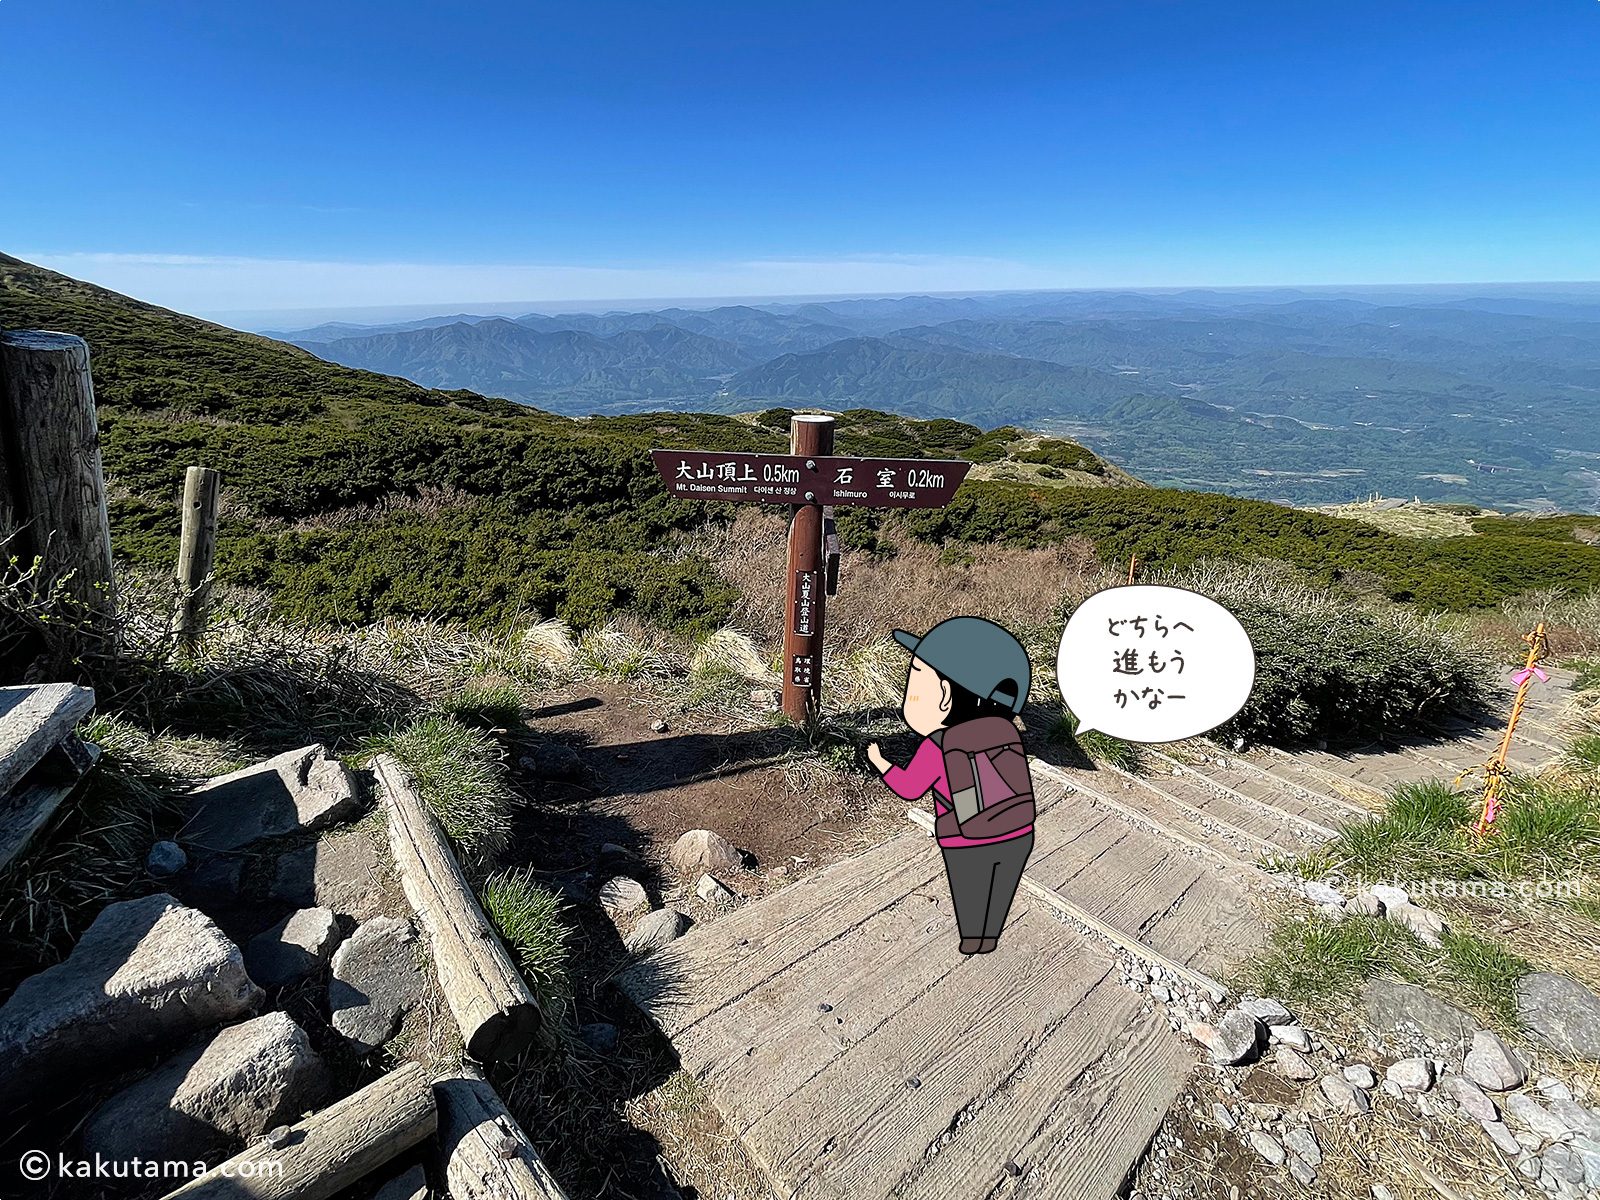 鳥取大山の木道分岐点の写真と登山者のイラスト